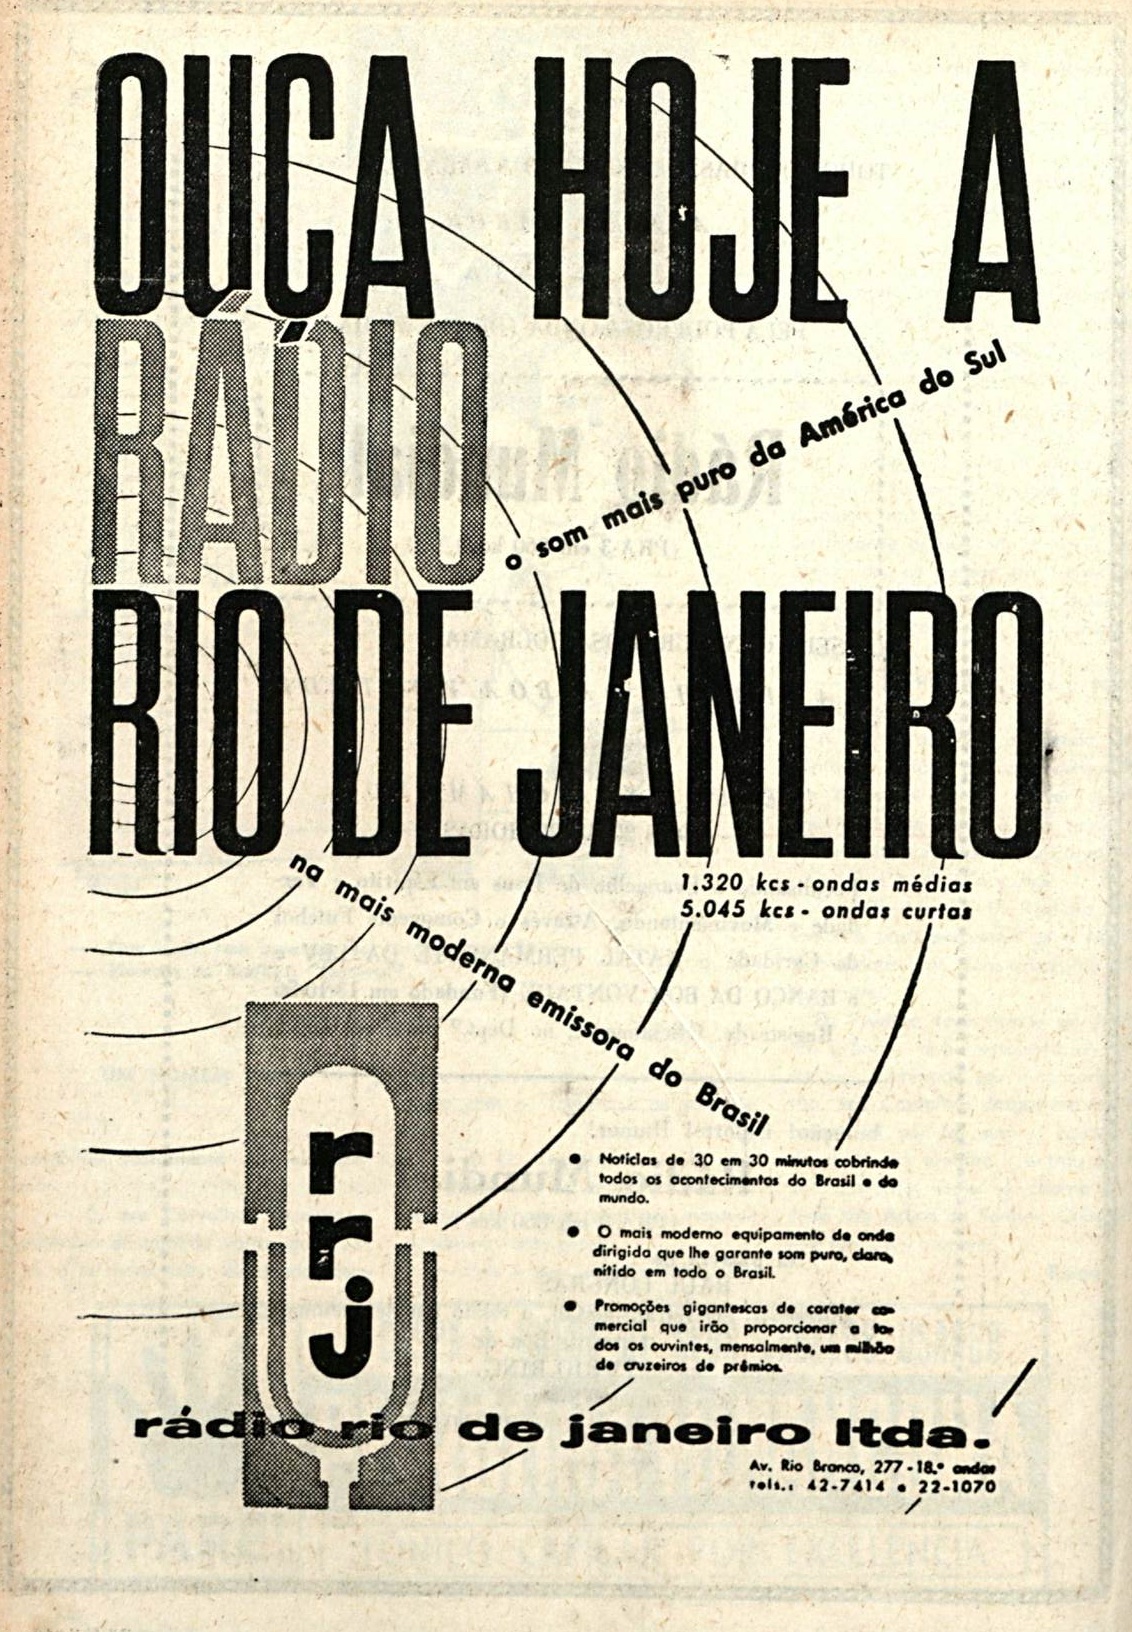 Campanha veiculada em 1960 promovendo a Rádio Rio de Janeiro